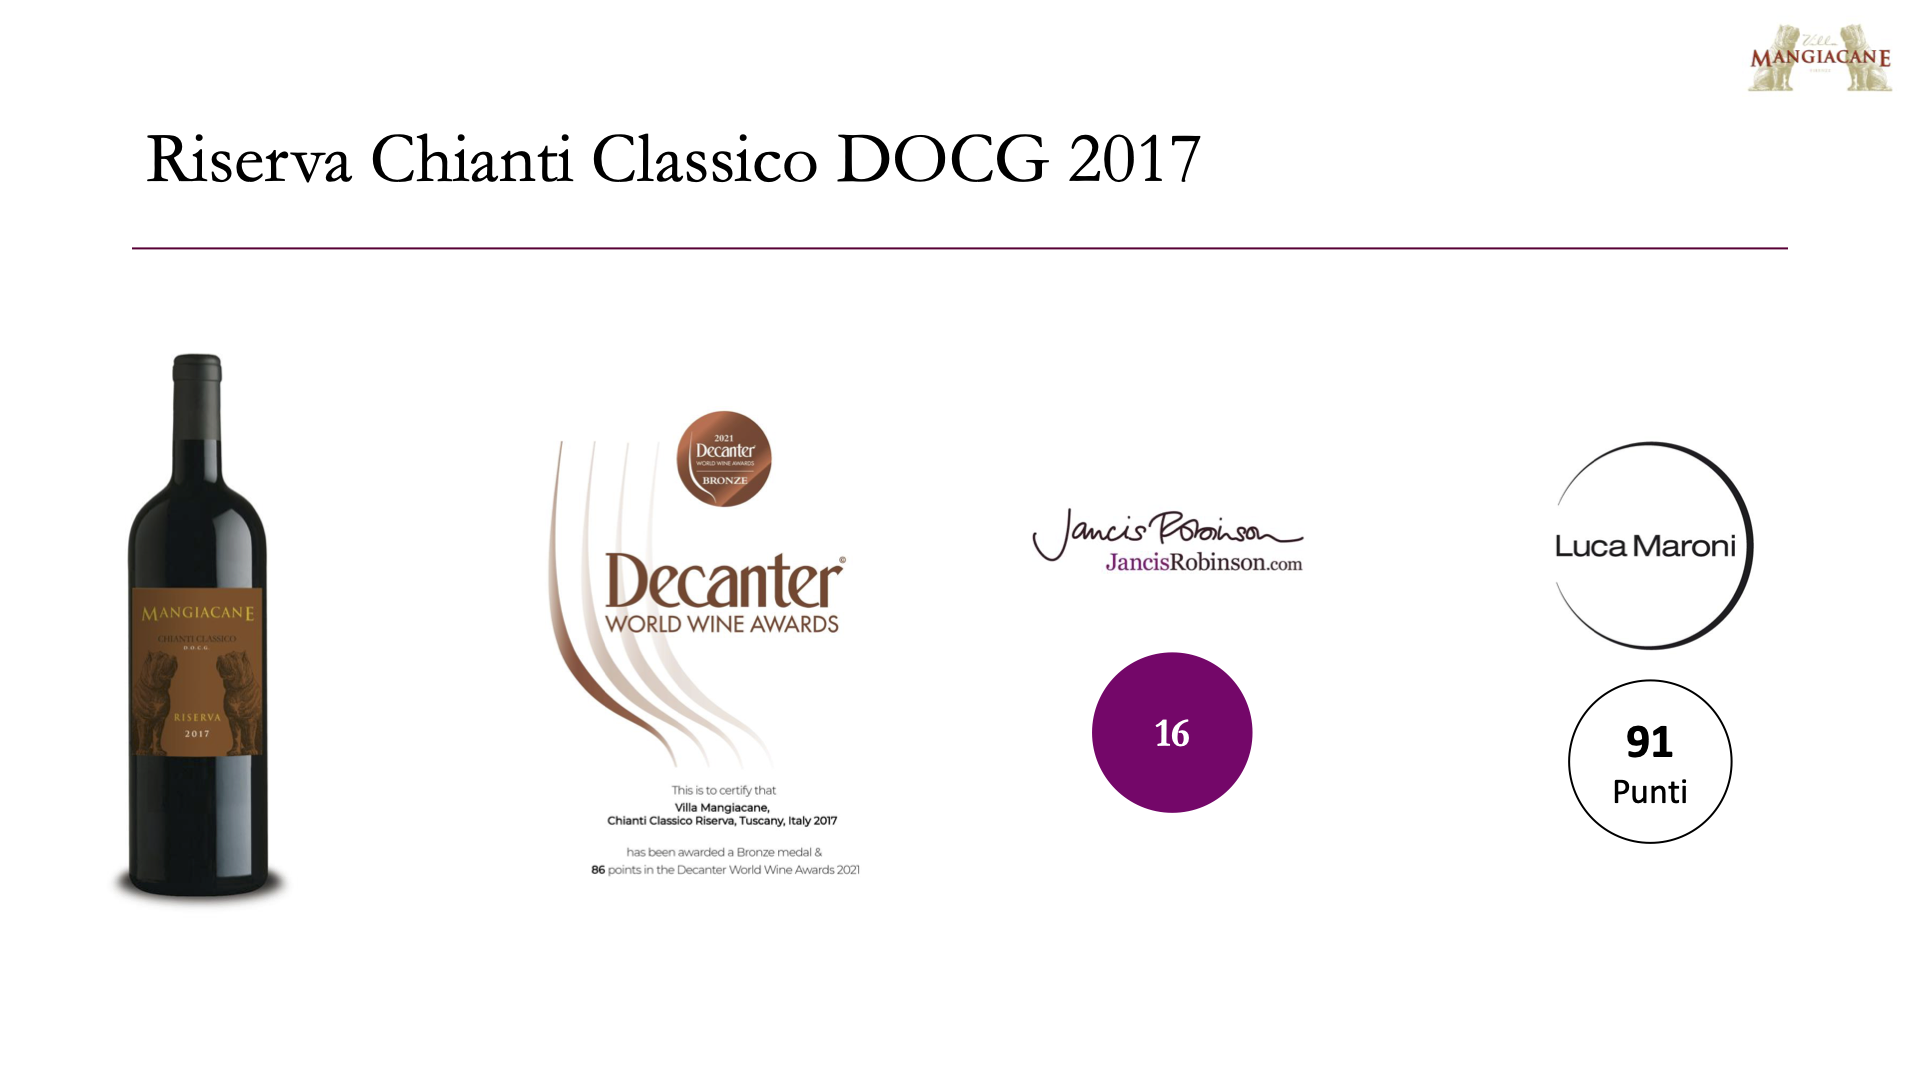 Villa Mangiacane Chianti Classico Riserva DOCG